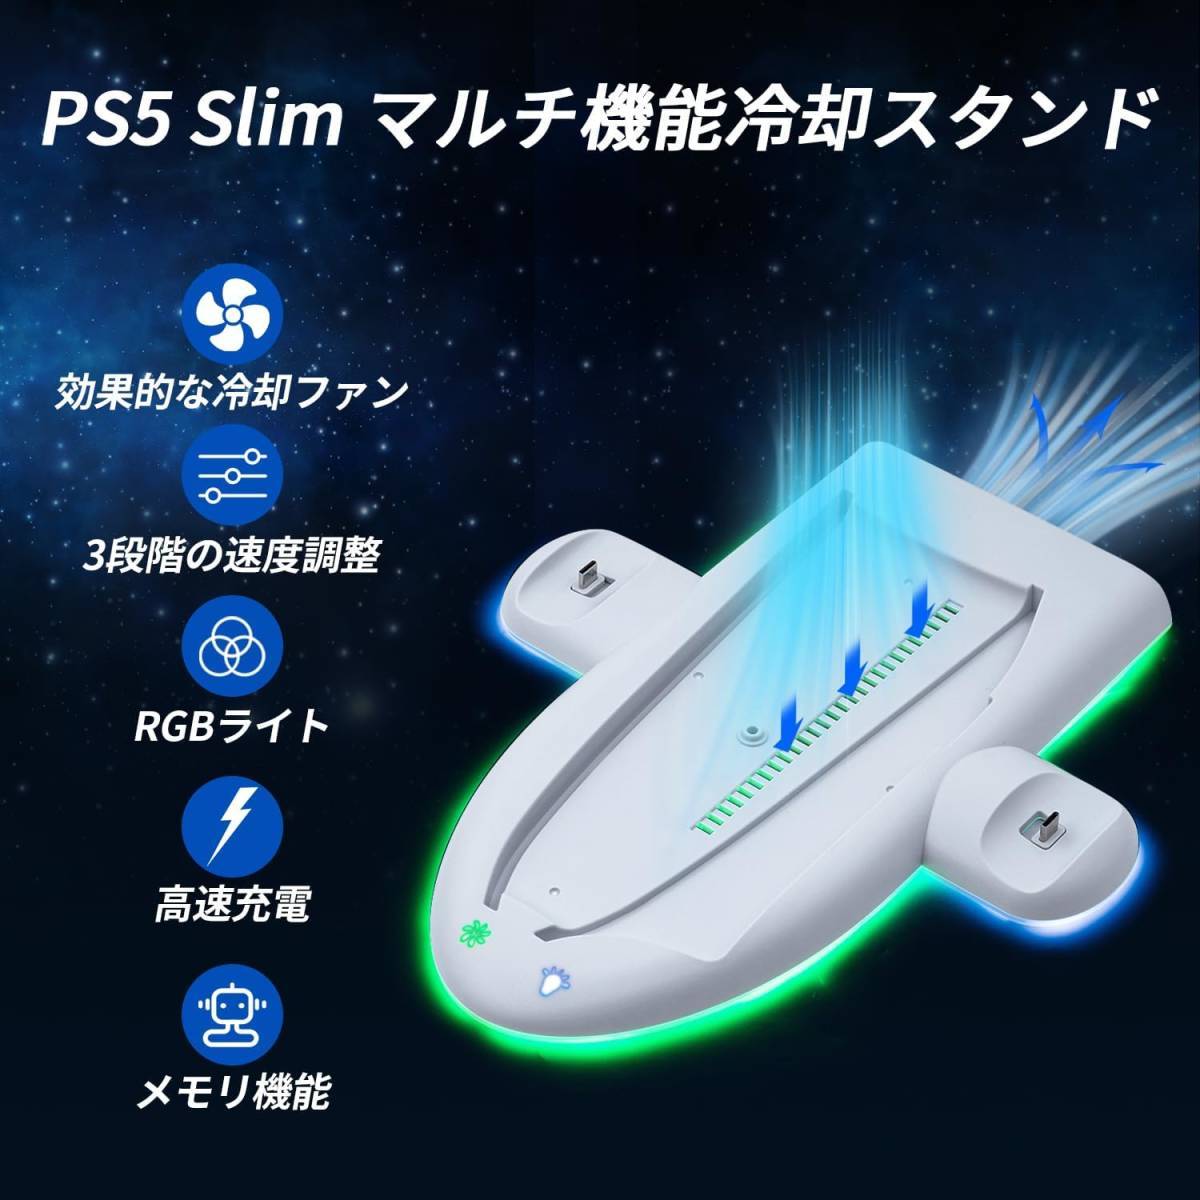 【宇宙船デザイン】PS5 Slim 縦置きスタンド 冷却 収納 多機能 コントローラー2台同時充電 USB RGB PS6 静音設計 過充電防止